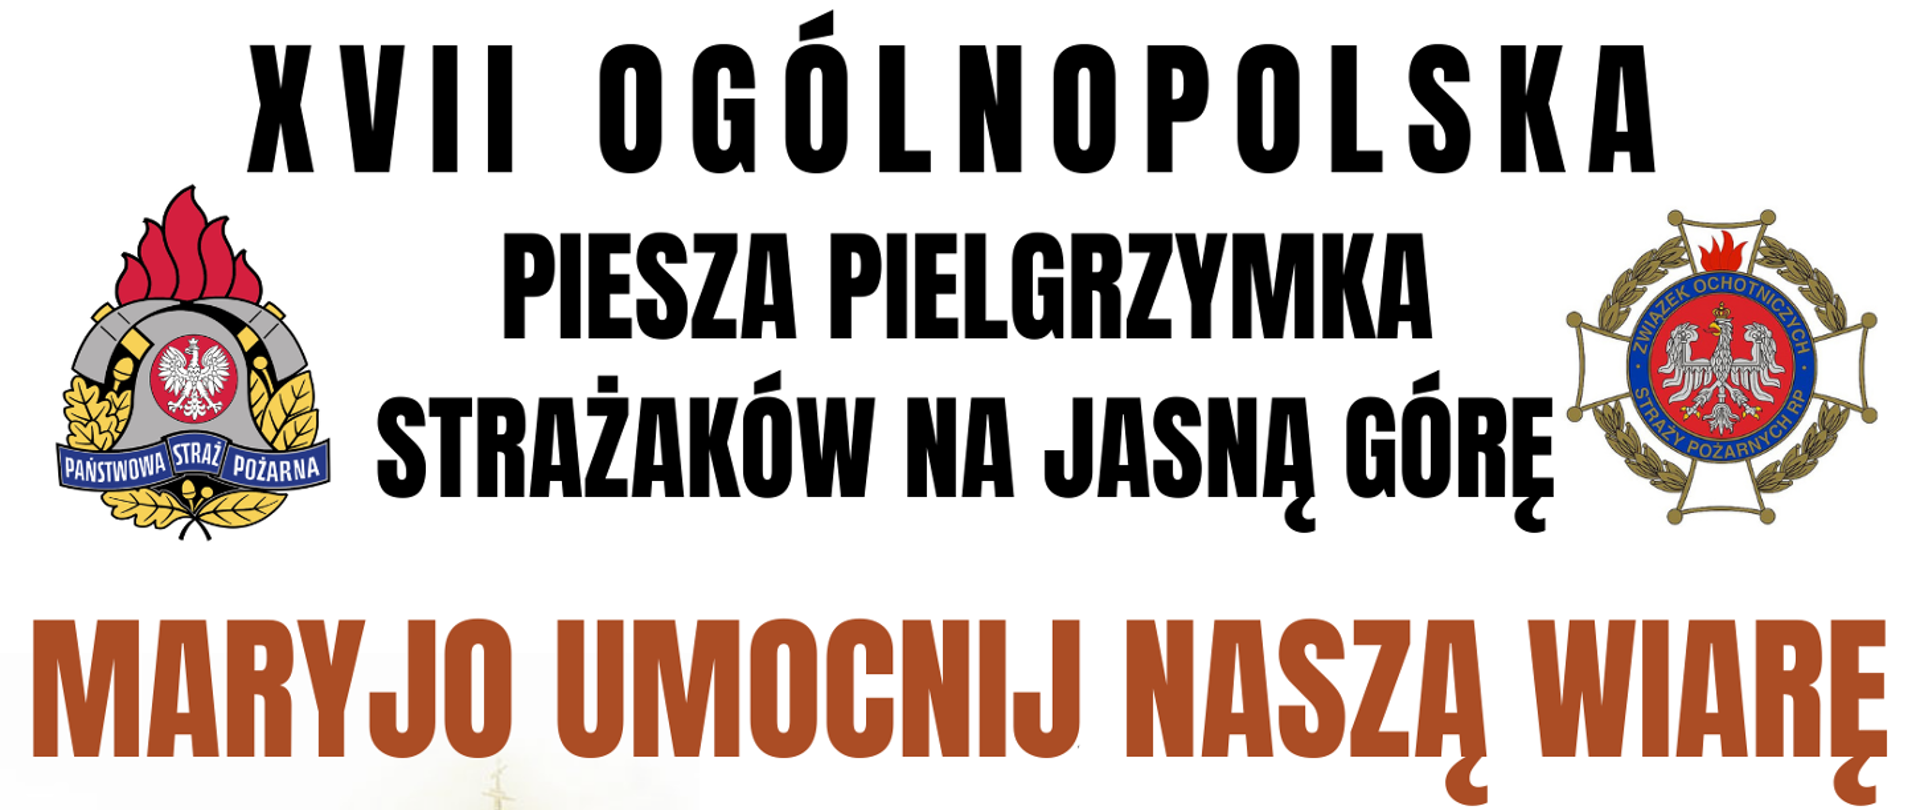 Baner XVII Ogólnopolskiej pieszej pielgrzymki strażaków na Jasną Górę. Na białym tle loga PSP oraz OSP.